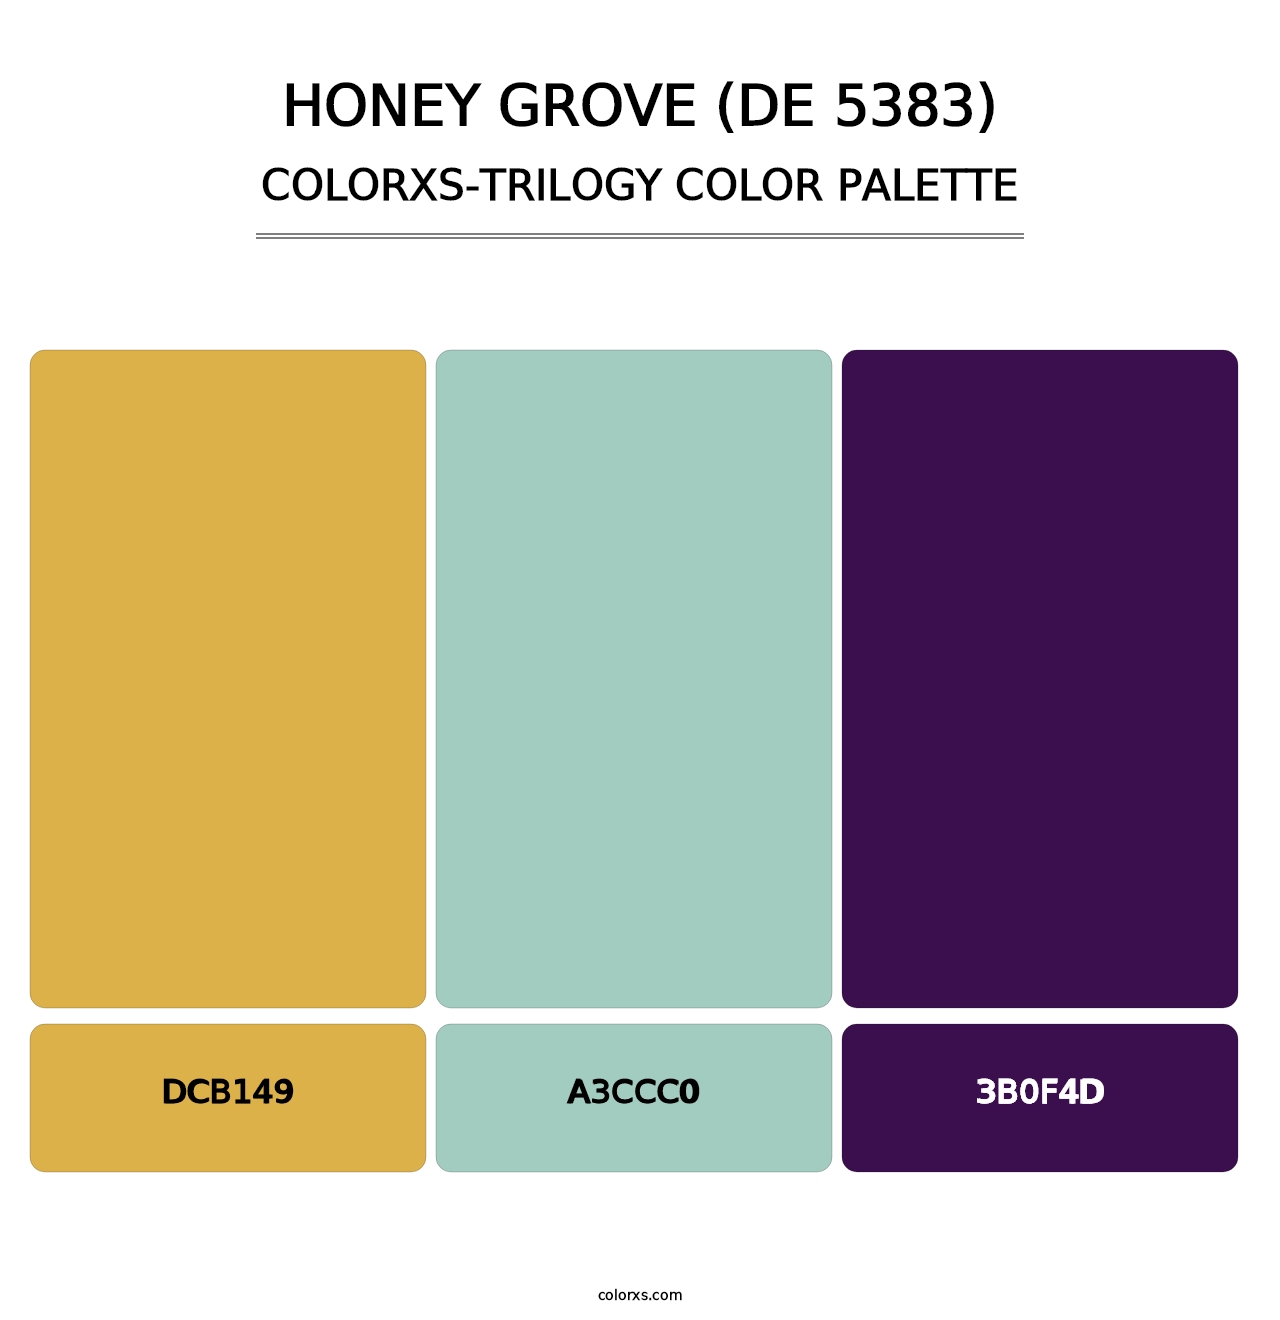 Honey Grove (DE 5383) - Colorxs Trilogy Palette